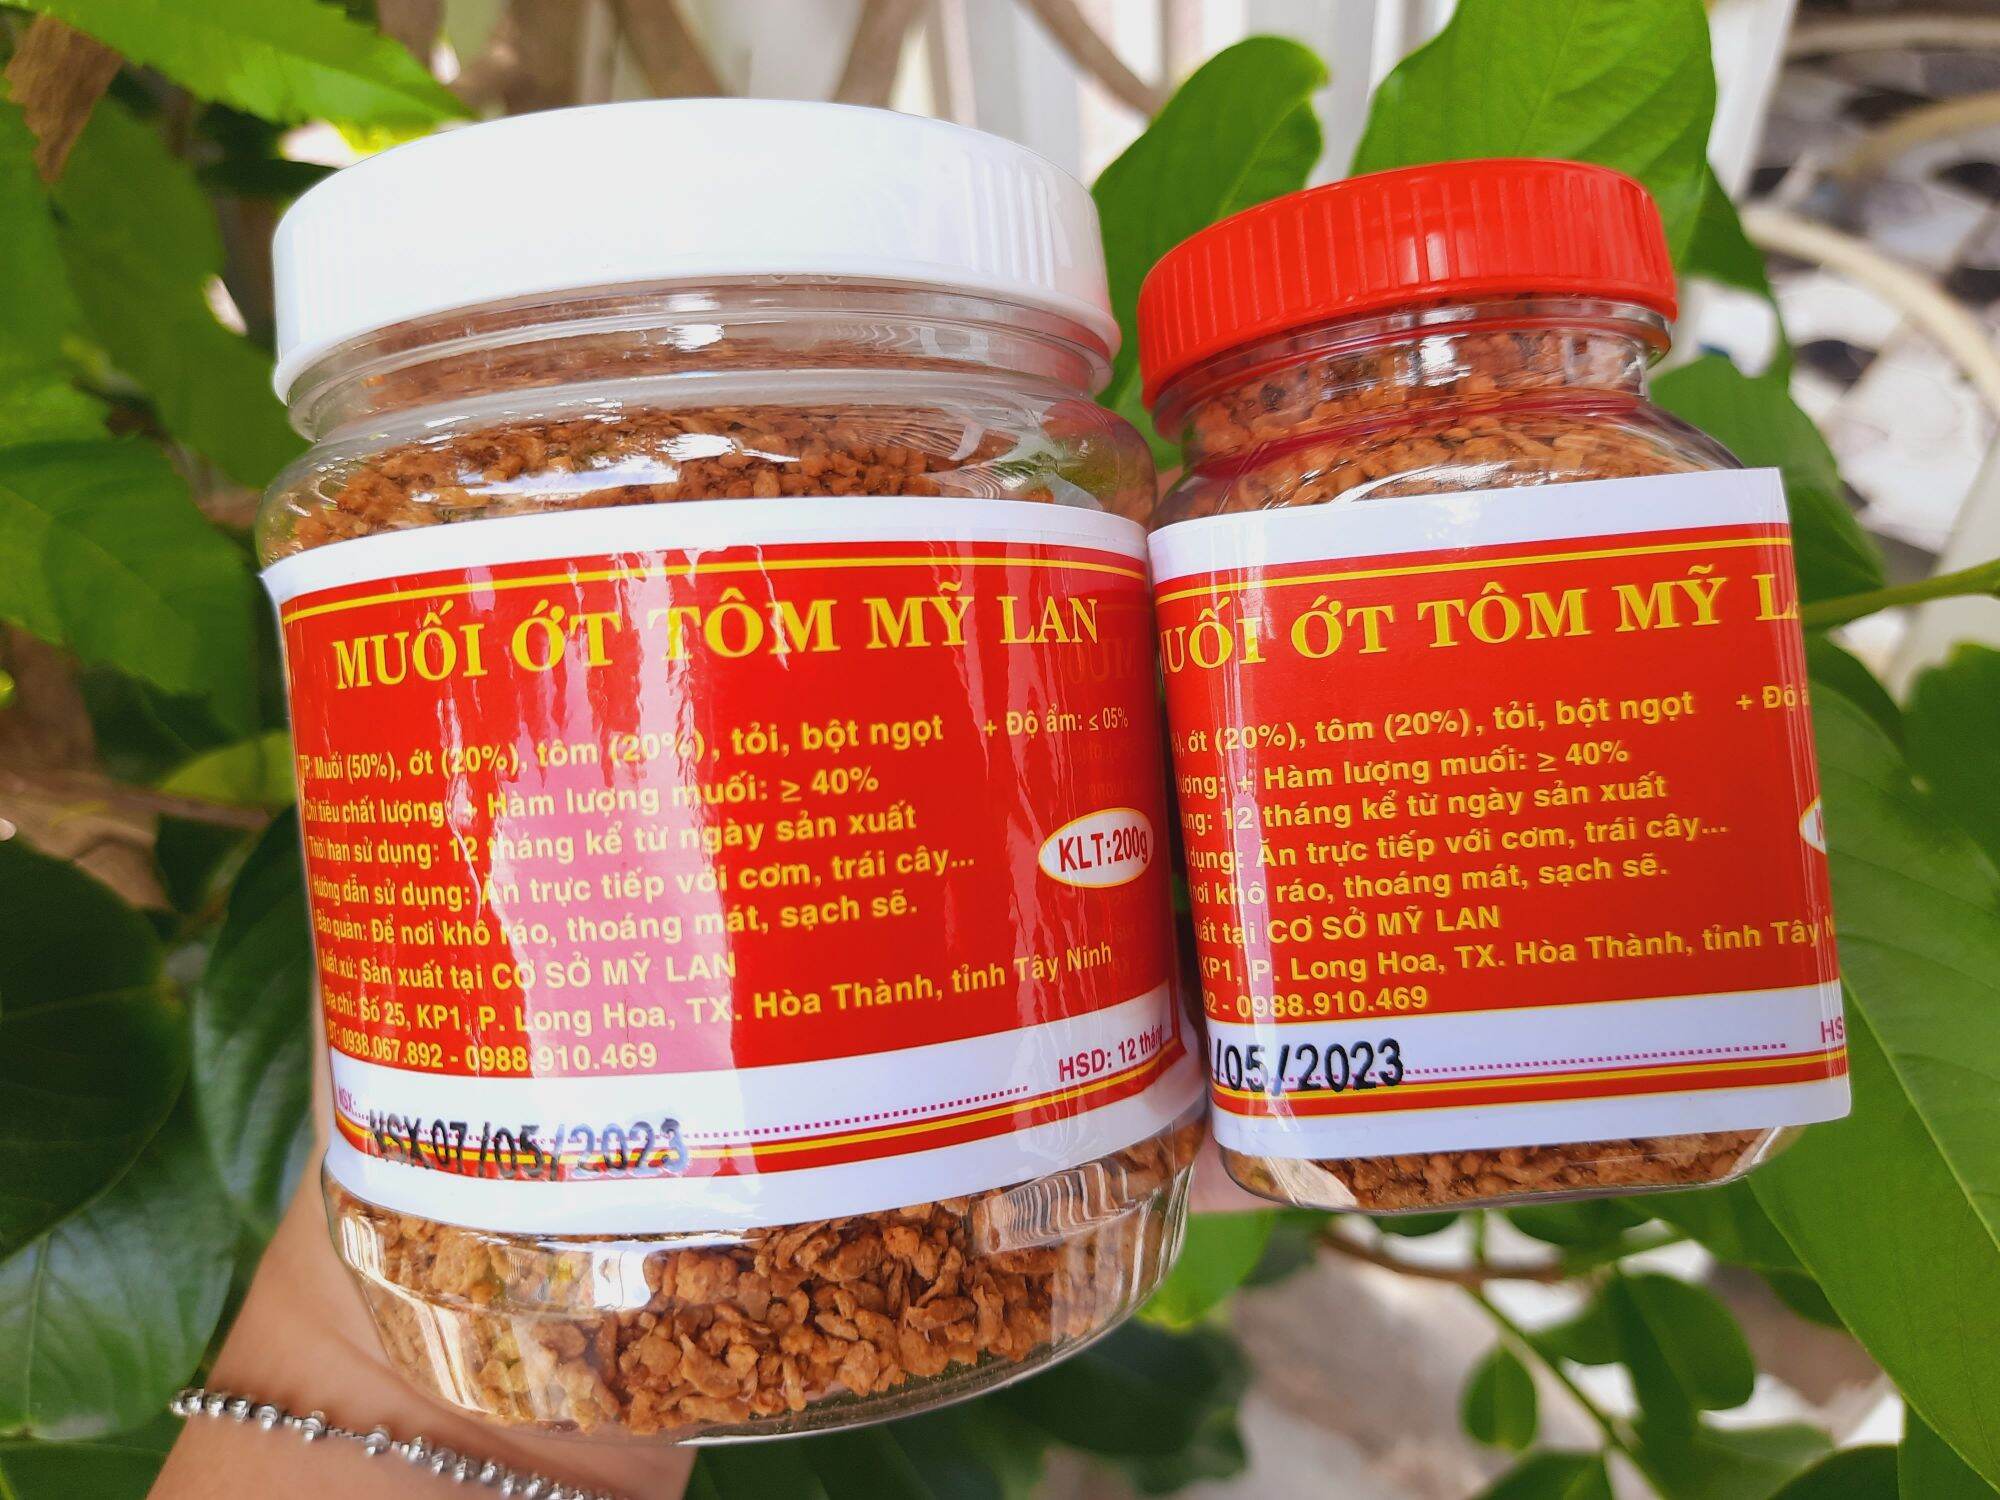 Muối ớt tôm rang hiệu Mỹ Lan - đặc sản Tây Ninh, giòn cay thơm ngon